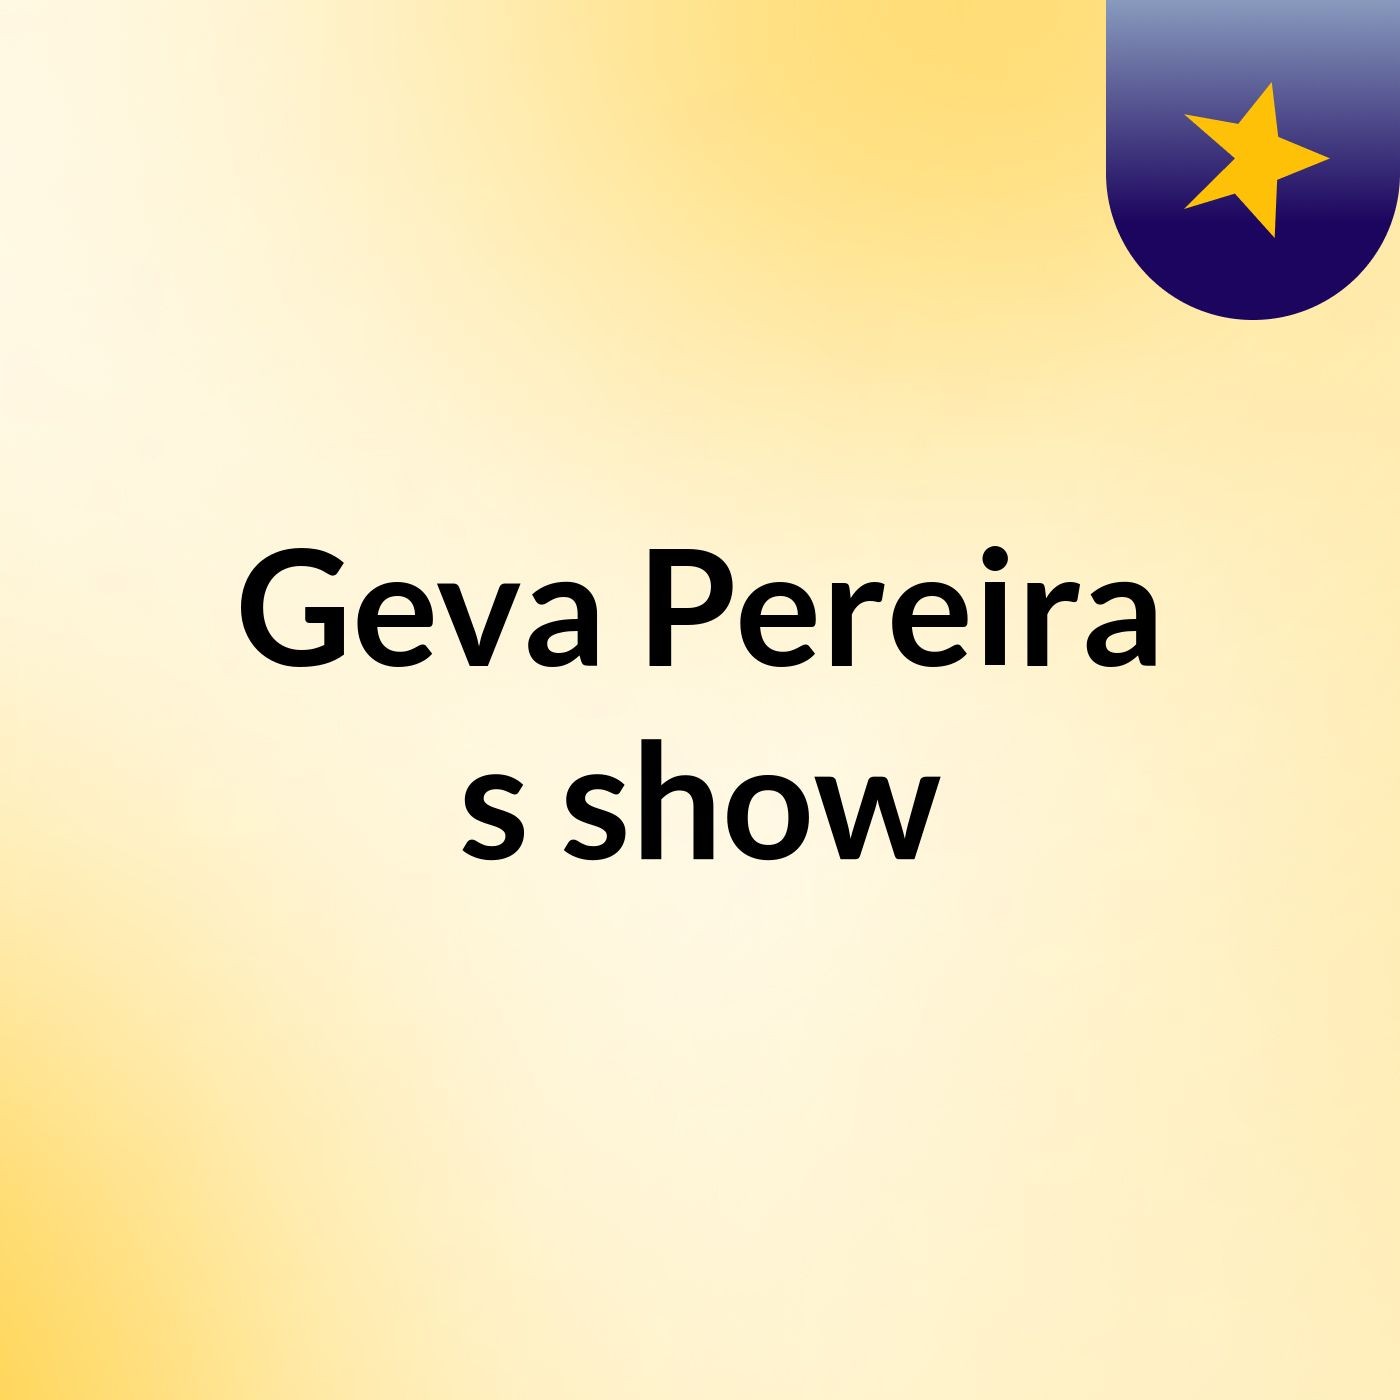 Geva Pereira's show